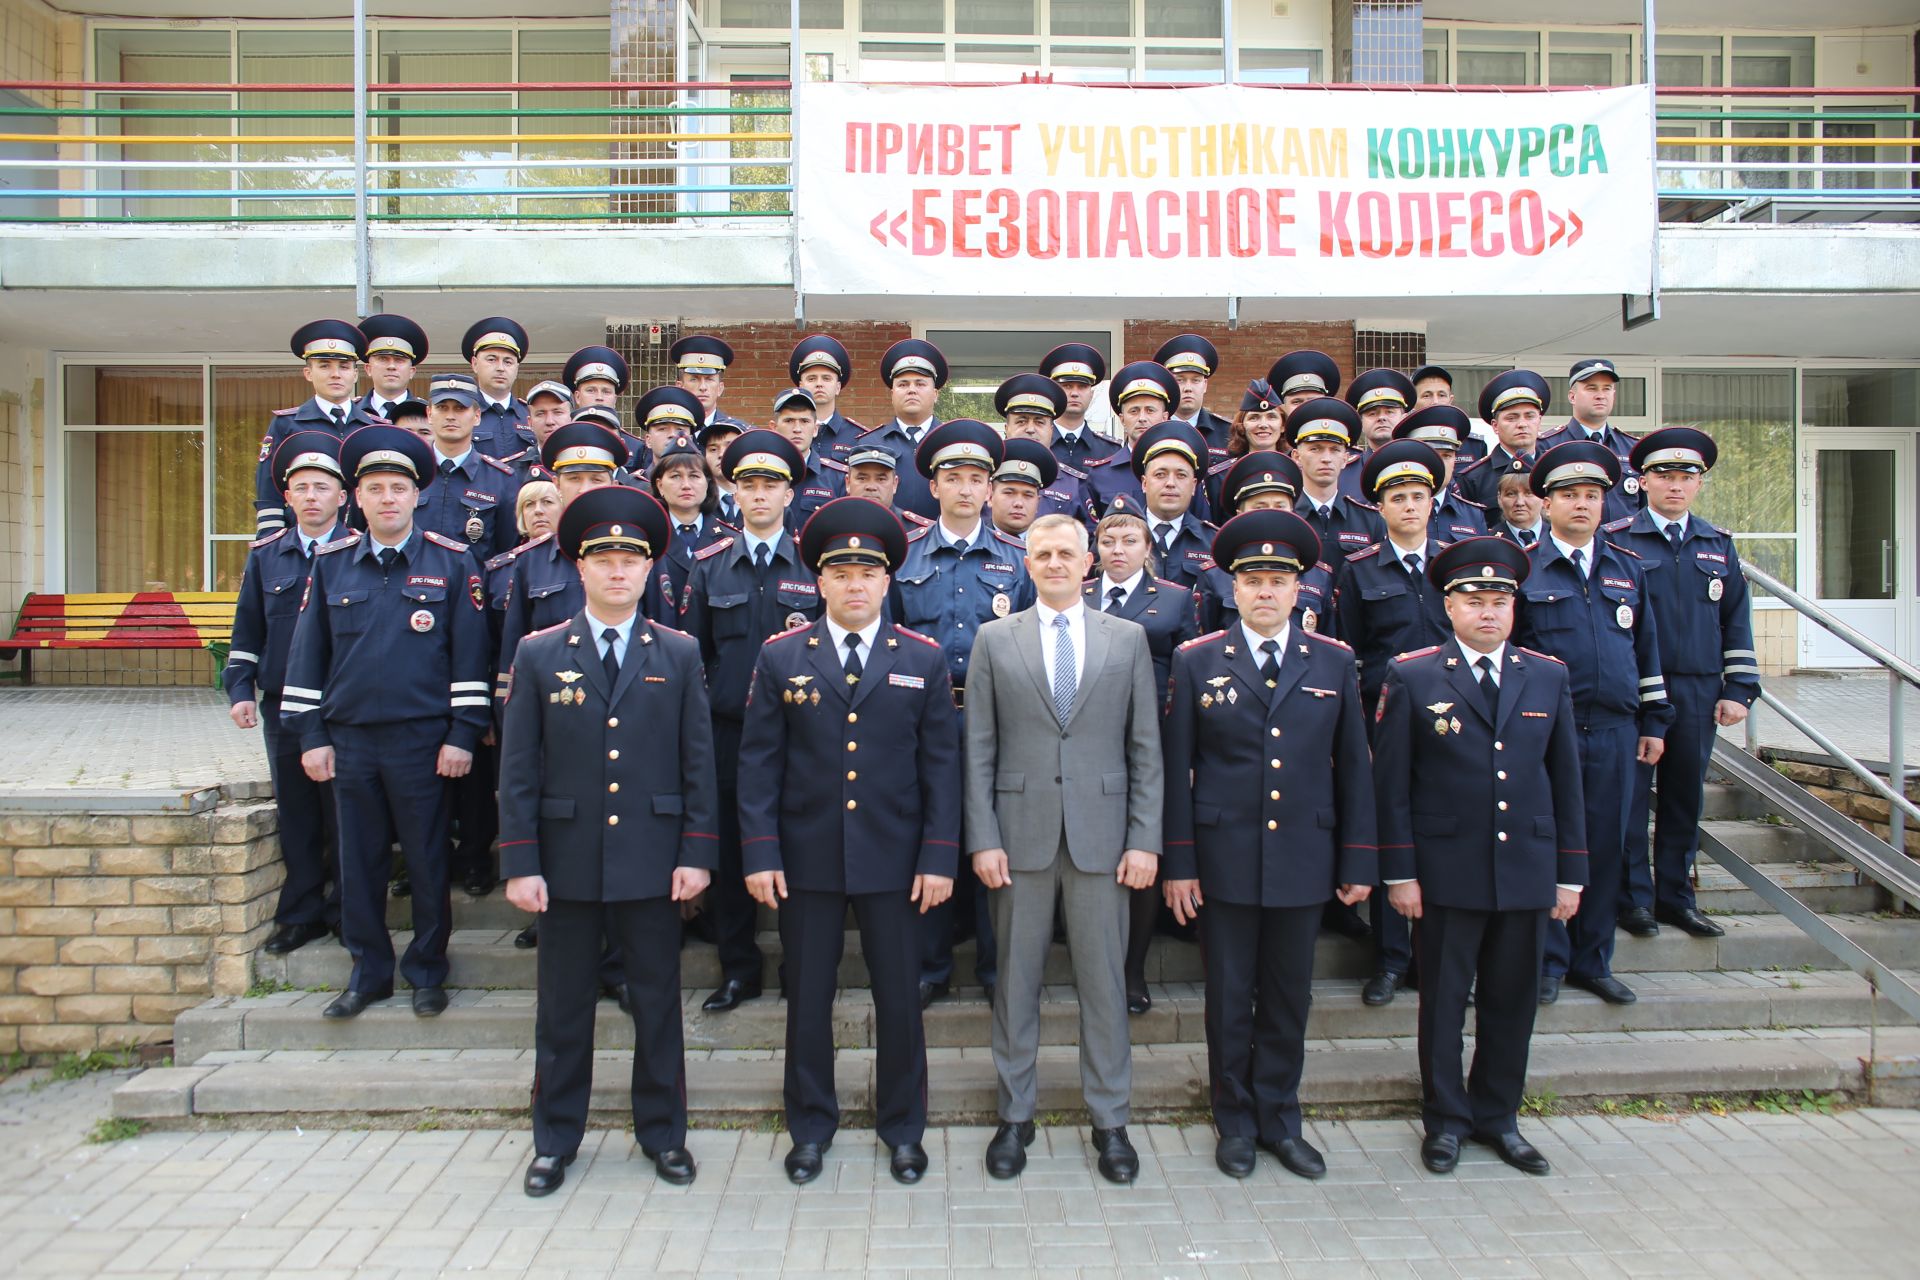 В Татарстане стартовал республиканский конкурс «Безопасное колесо»